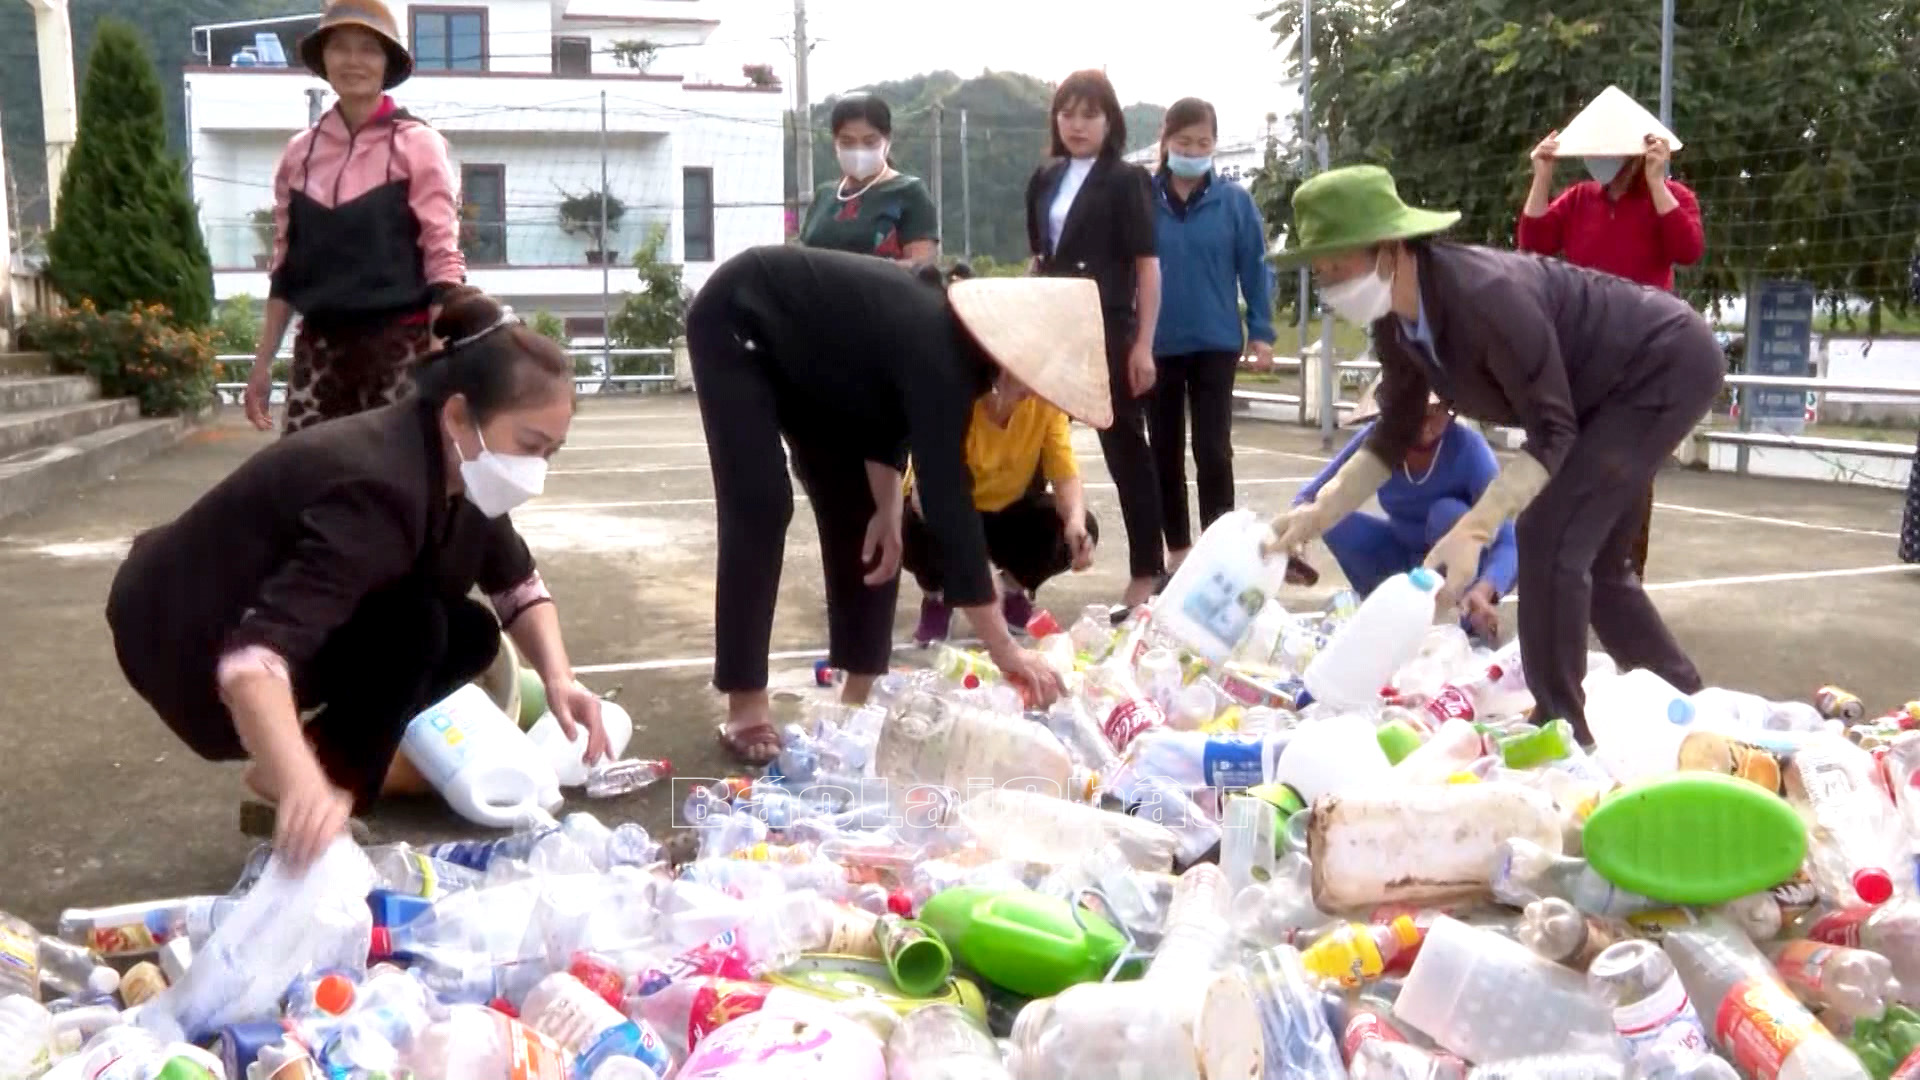 Phong trào “chống rác thải nhựa” đang được các cấp hội phụ nữ thành phố Lai Châu triển khai trở thành việc làm thường xuyên.